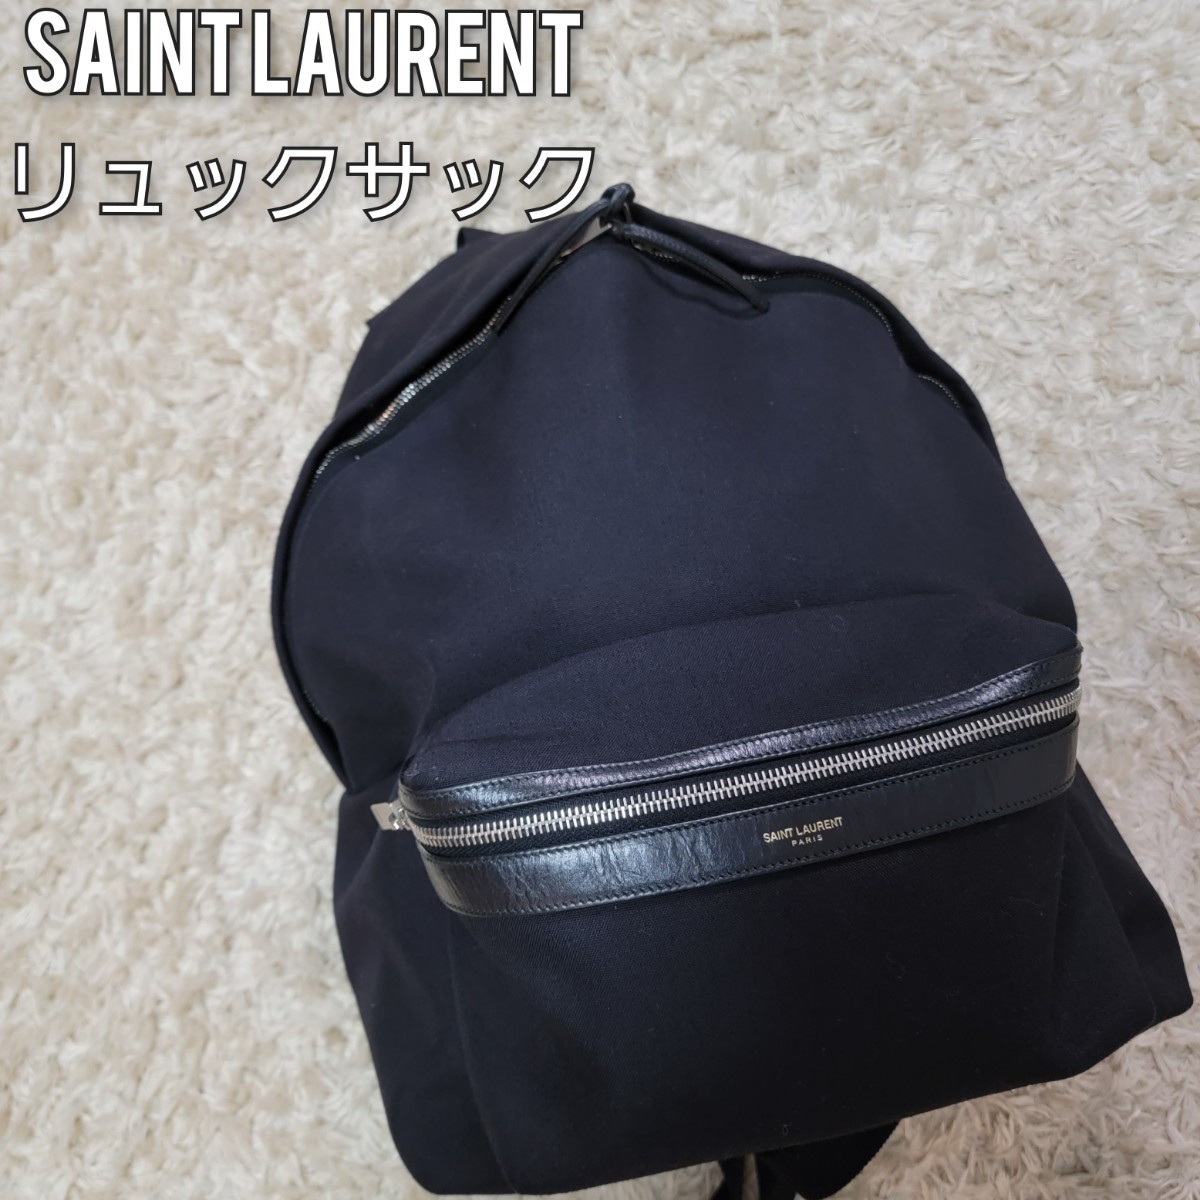 激安品 30日までお値下げ品☆SAINT LAURENT☆新品未使用品リュック ショルダーバッグ